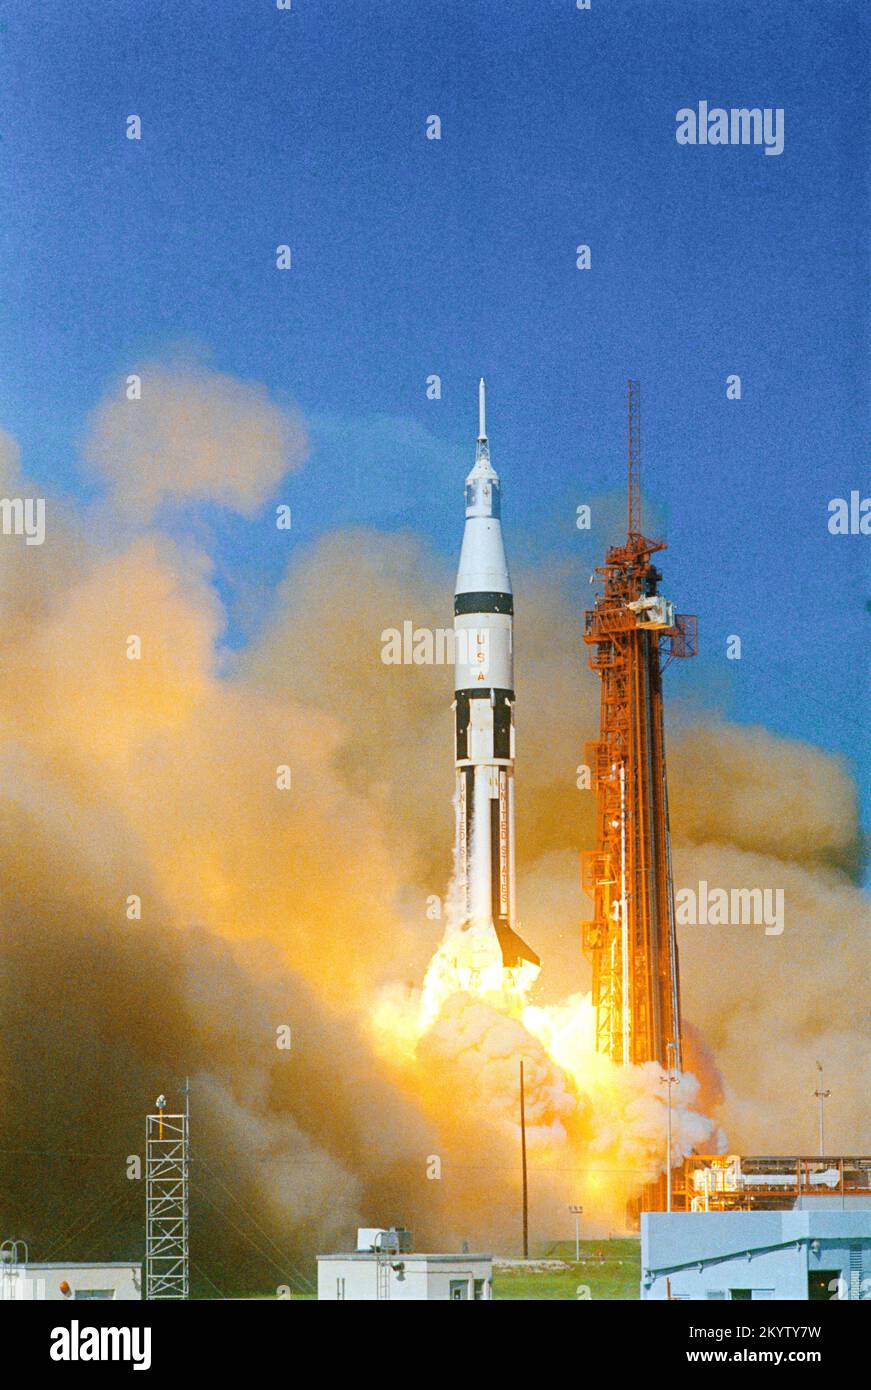 L'Apollo 7 Apollo 7 parte dal complesso di lancio di Cape Kennedy 34 alle 8:11:03, ora legale orientale. Gli astronauti a bordo, per la prima missione Apollo, furono Walter M. Schirra Jr., Comandante; Donn F. Eisele, pilota del modulo di comando; e Walter Cunningham, Pilota modulo lunare. Immagine n.: Jsc2005e16192 Data: Ottobre 11, 1968 Foto Stock